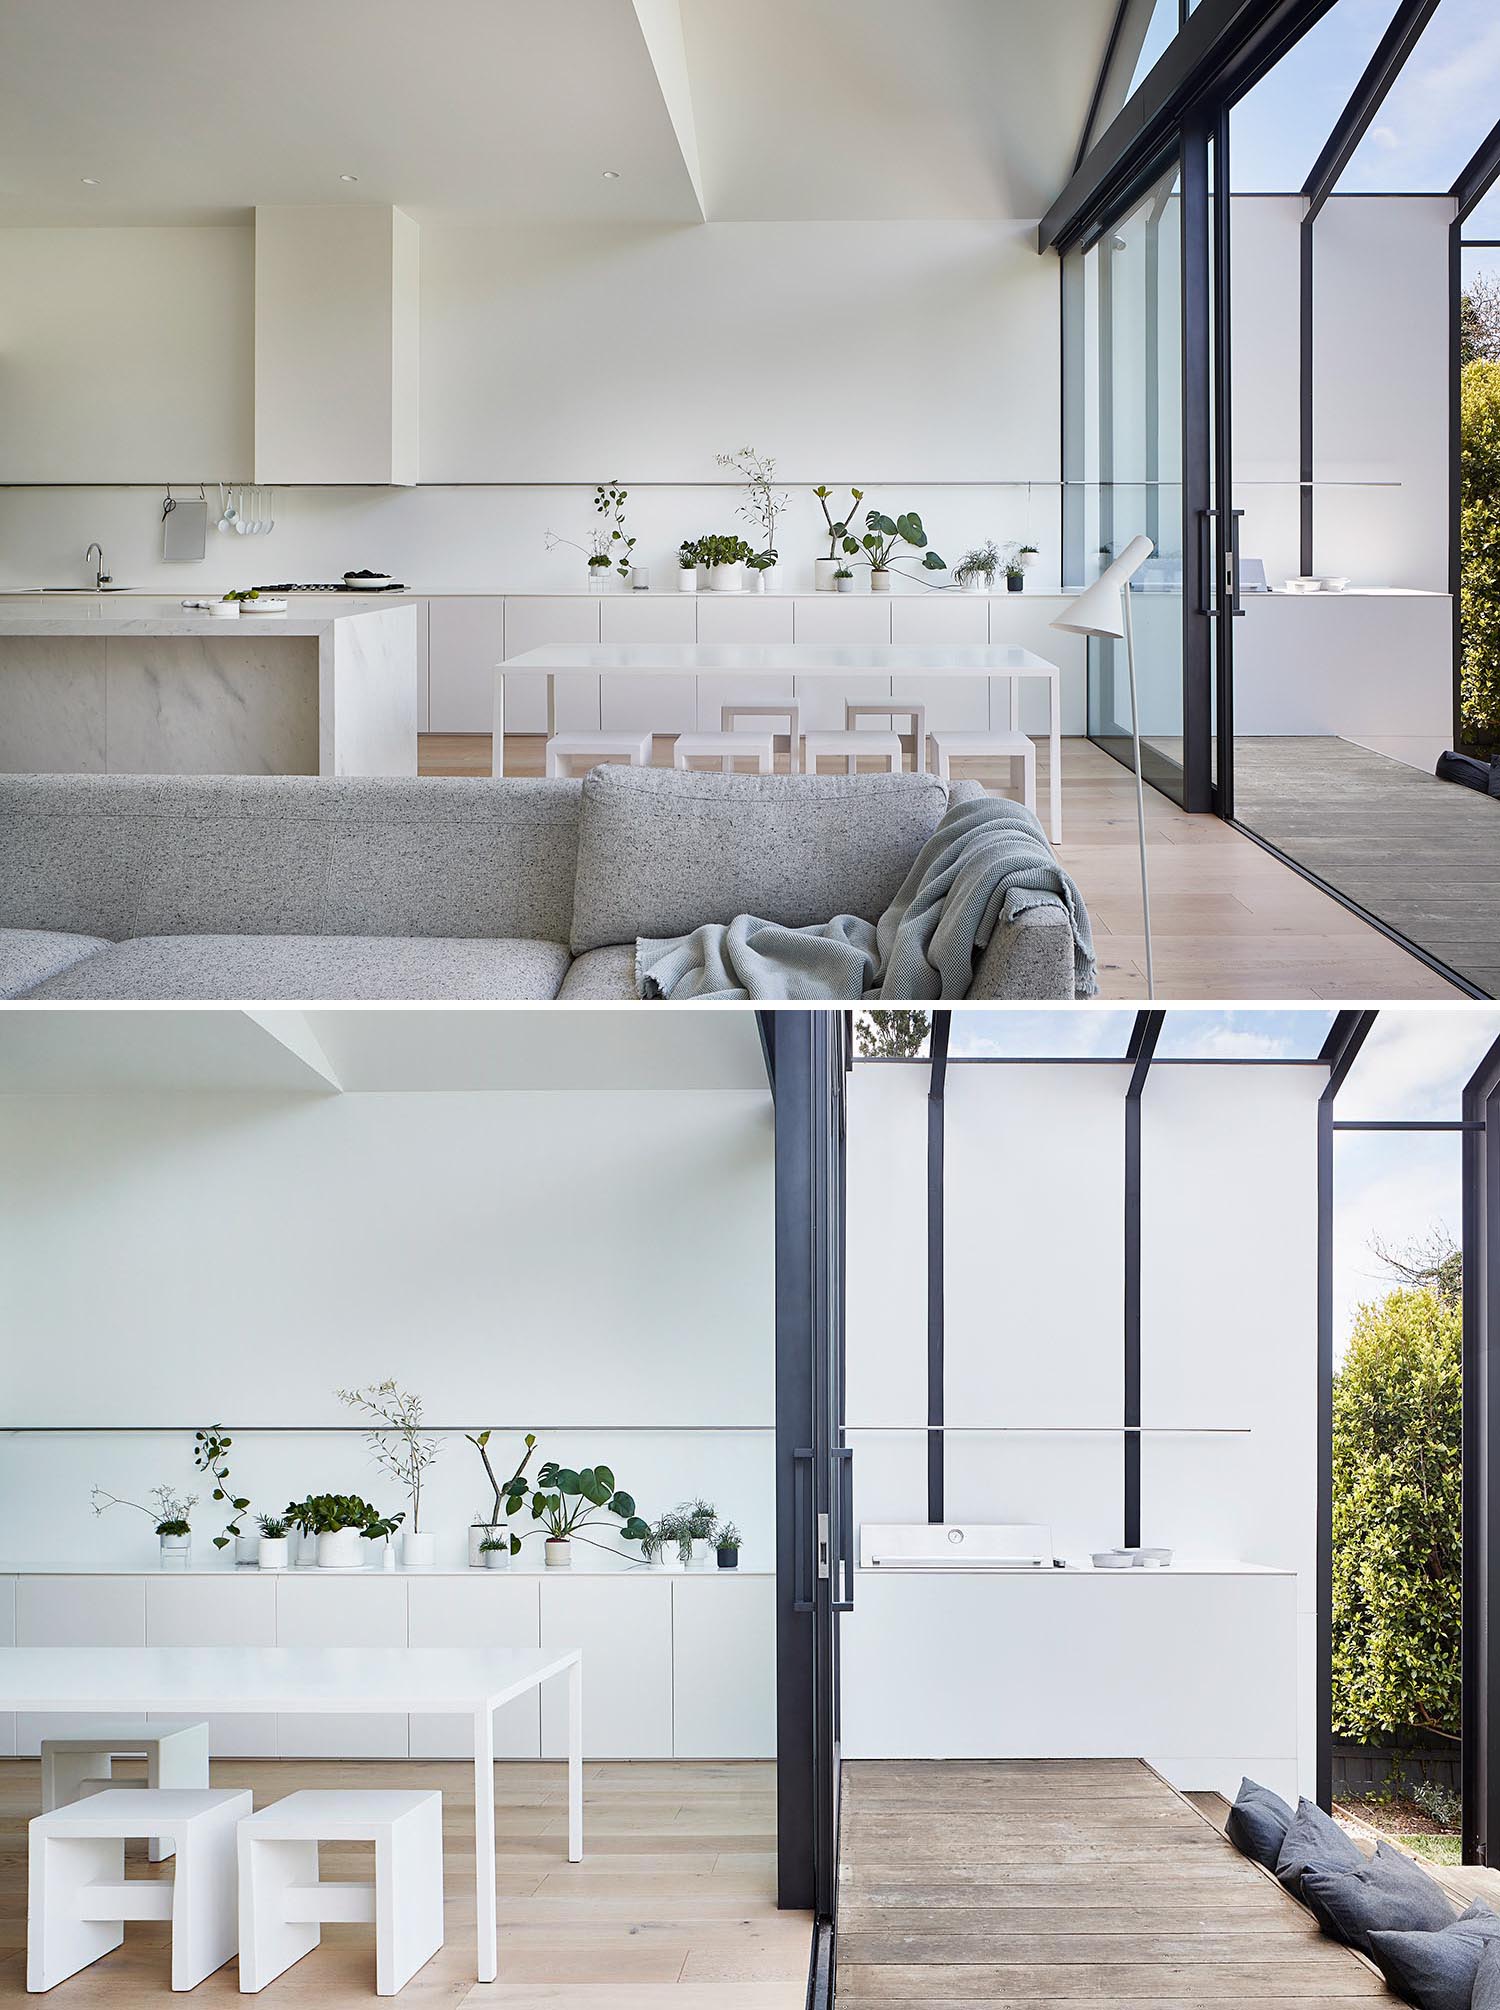 Современная пристройка к дому с белой кухней, большой раздвижной стеклянной дверью и зоной для барбекю на открытом воздухе.